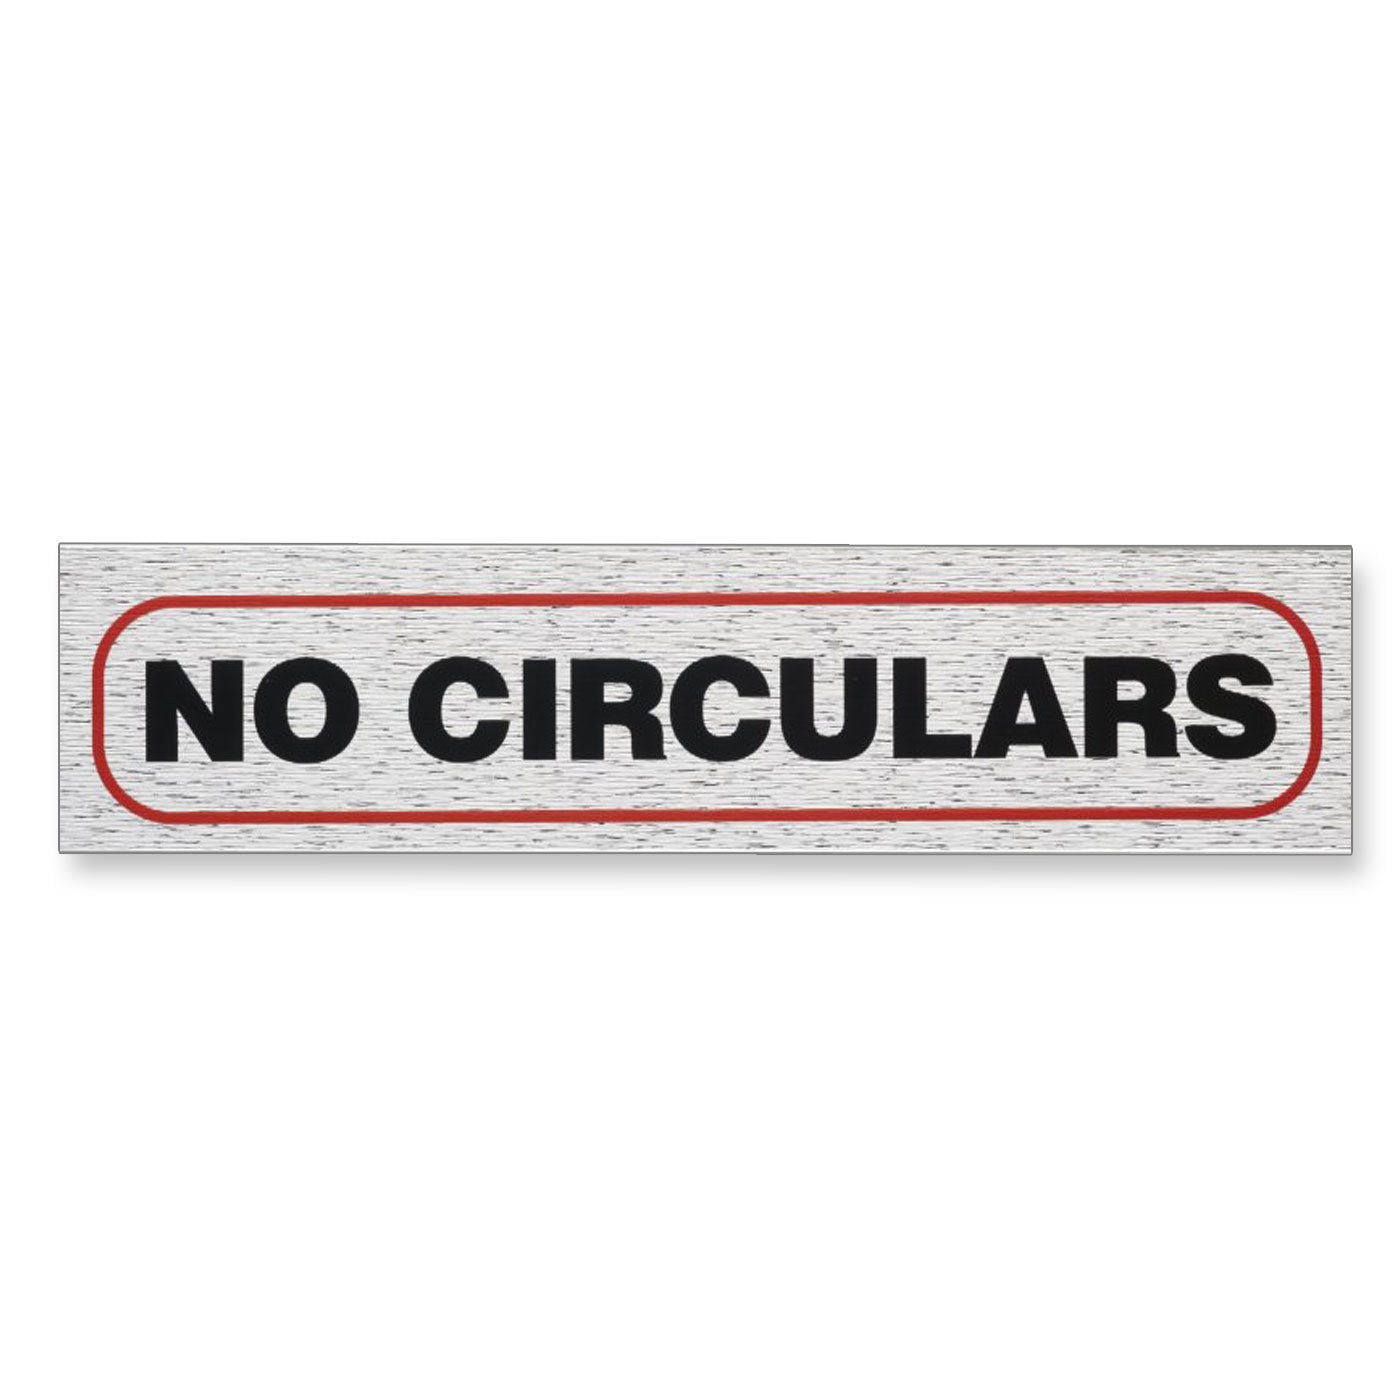 Information Sign "NO CIRCULARS" 17 x 4 cm [Self-Adhesive]